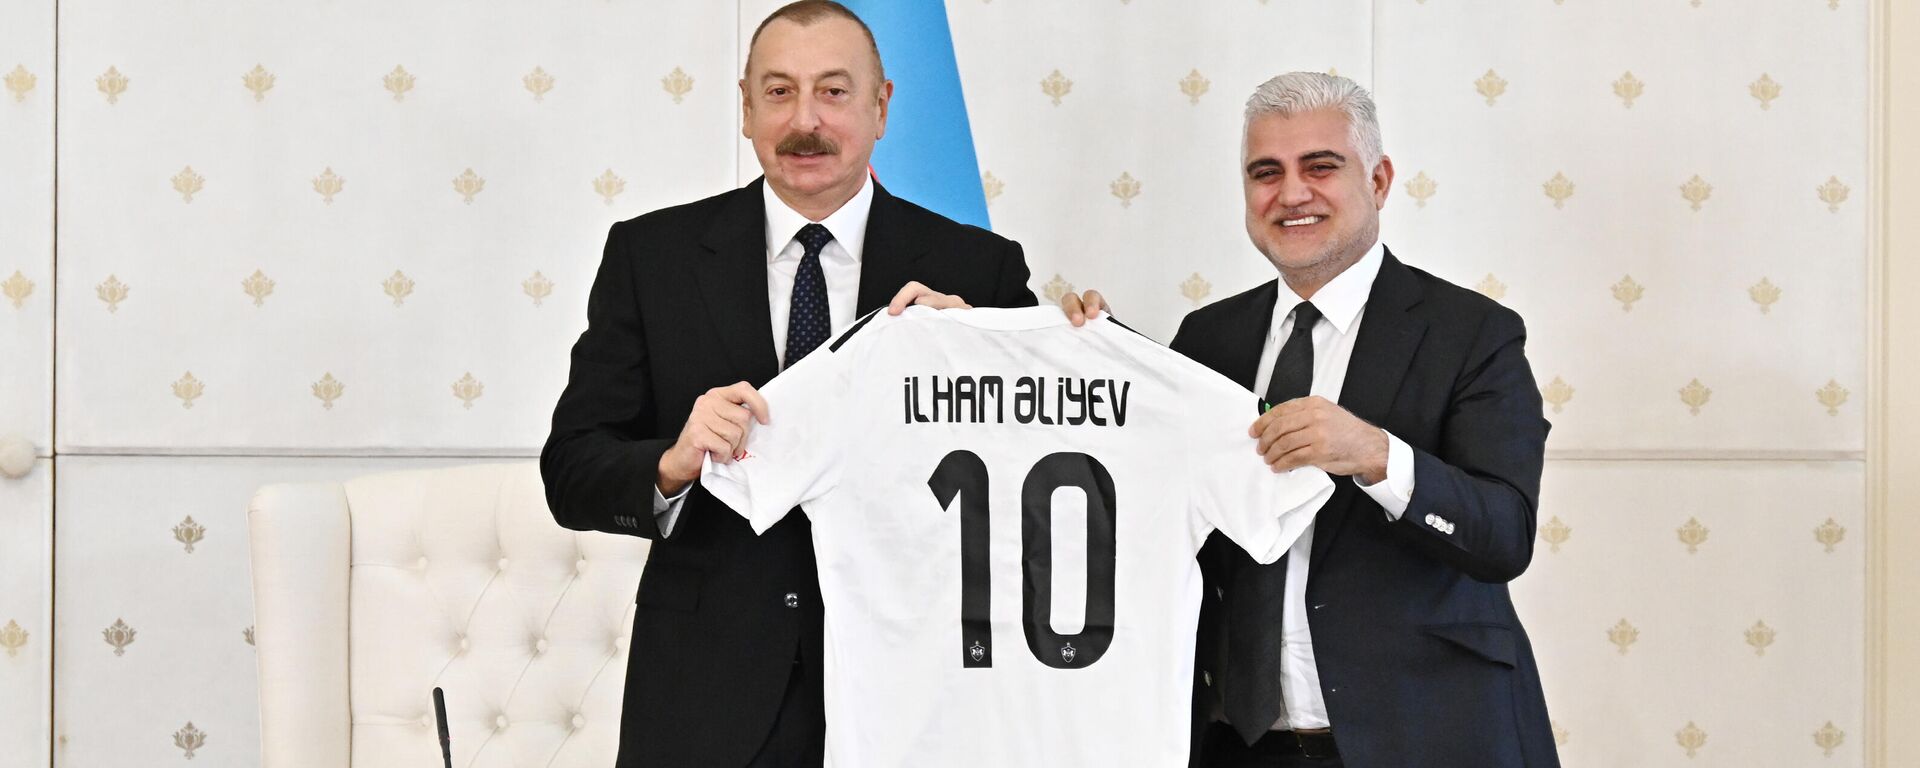 Президент Ильхам Алиев принял членов футбольного клуба Карабах - Sputnik Азербайджан, 1920, 13.12.2021